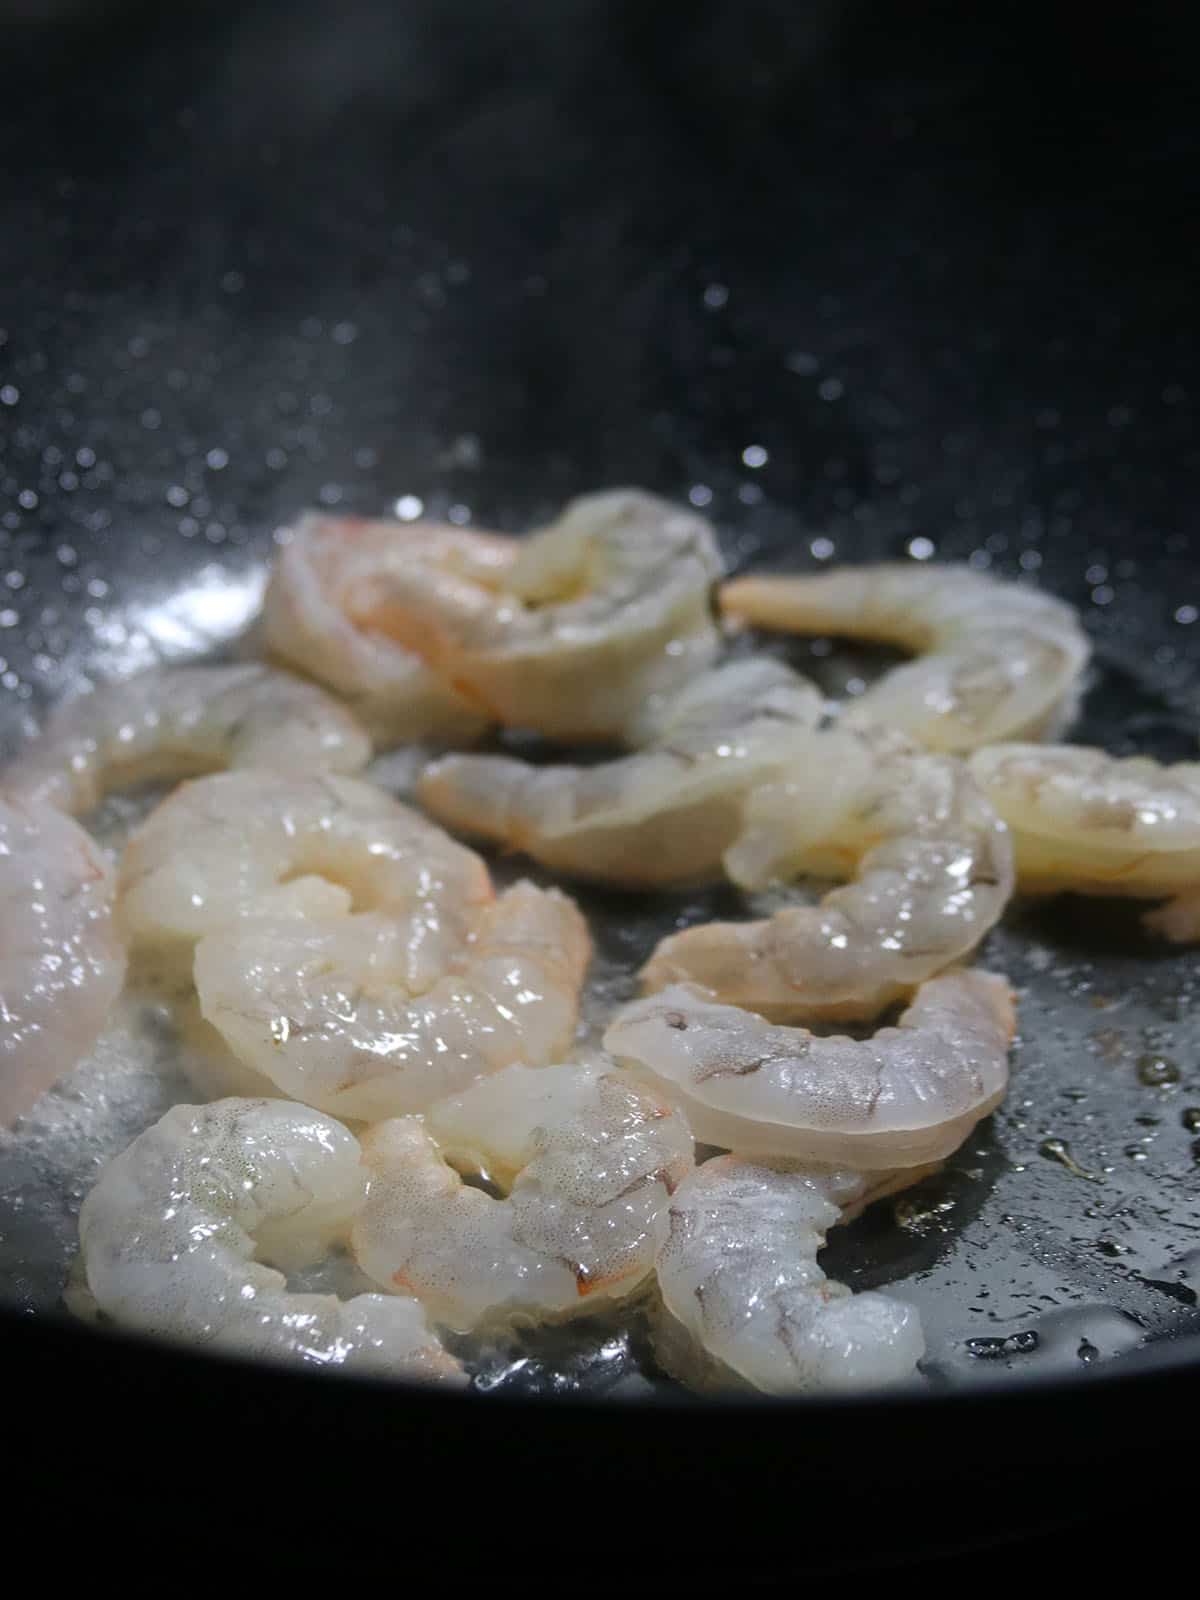 stir-frying shrimp in a wok